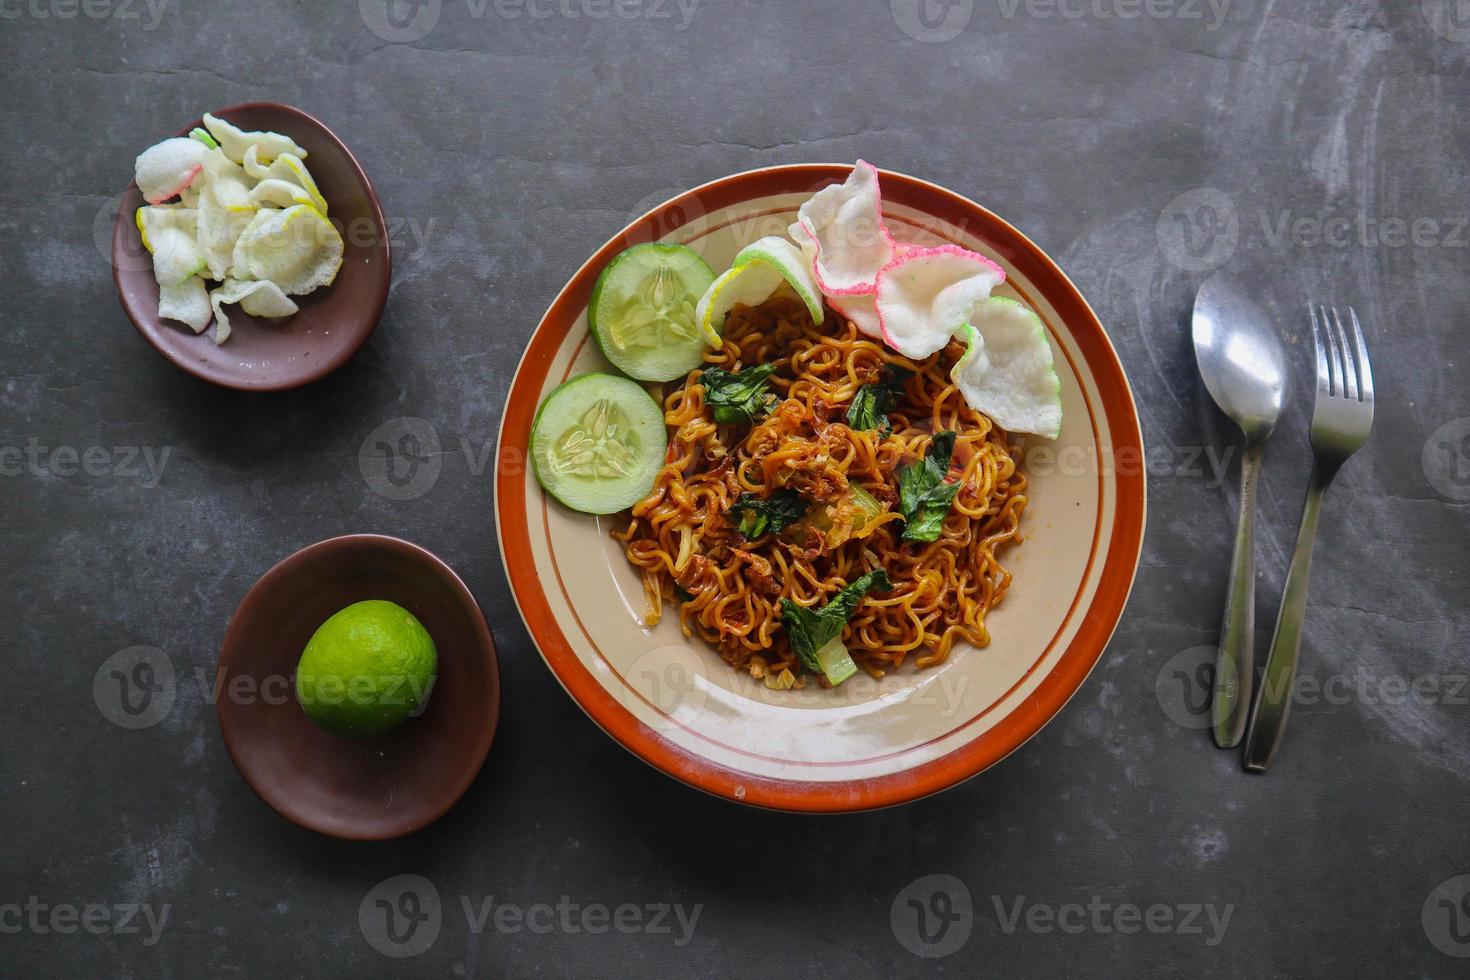 mie tek tek ou macarrão frito feito com macarrão de ovo com frango, repolho, mostarda, almôndegas, ovos mexidos. comida indonésia foto